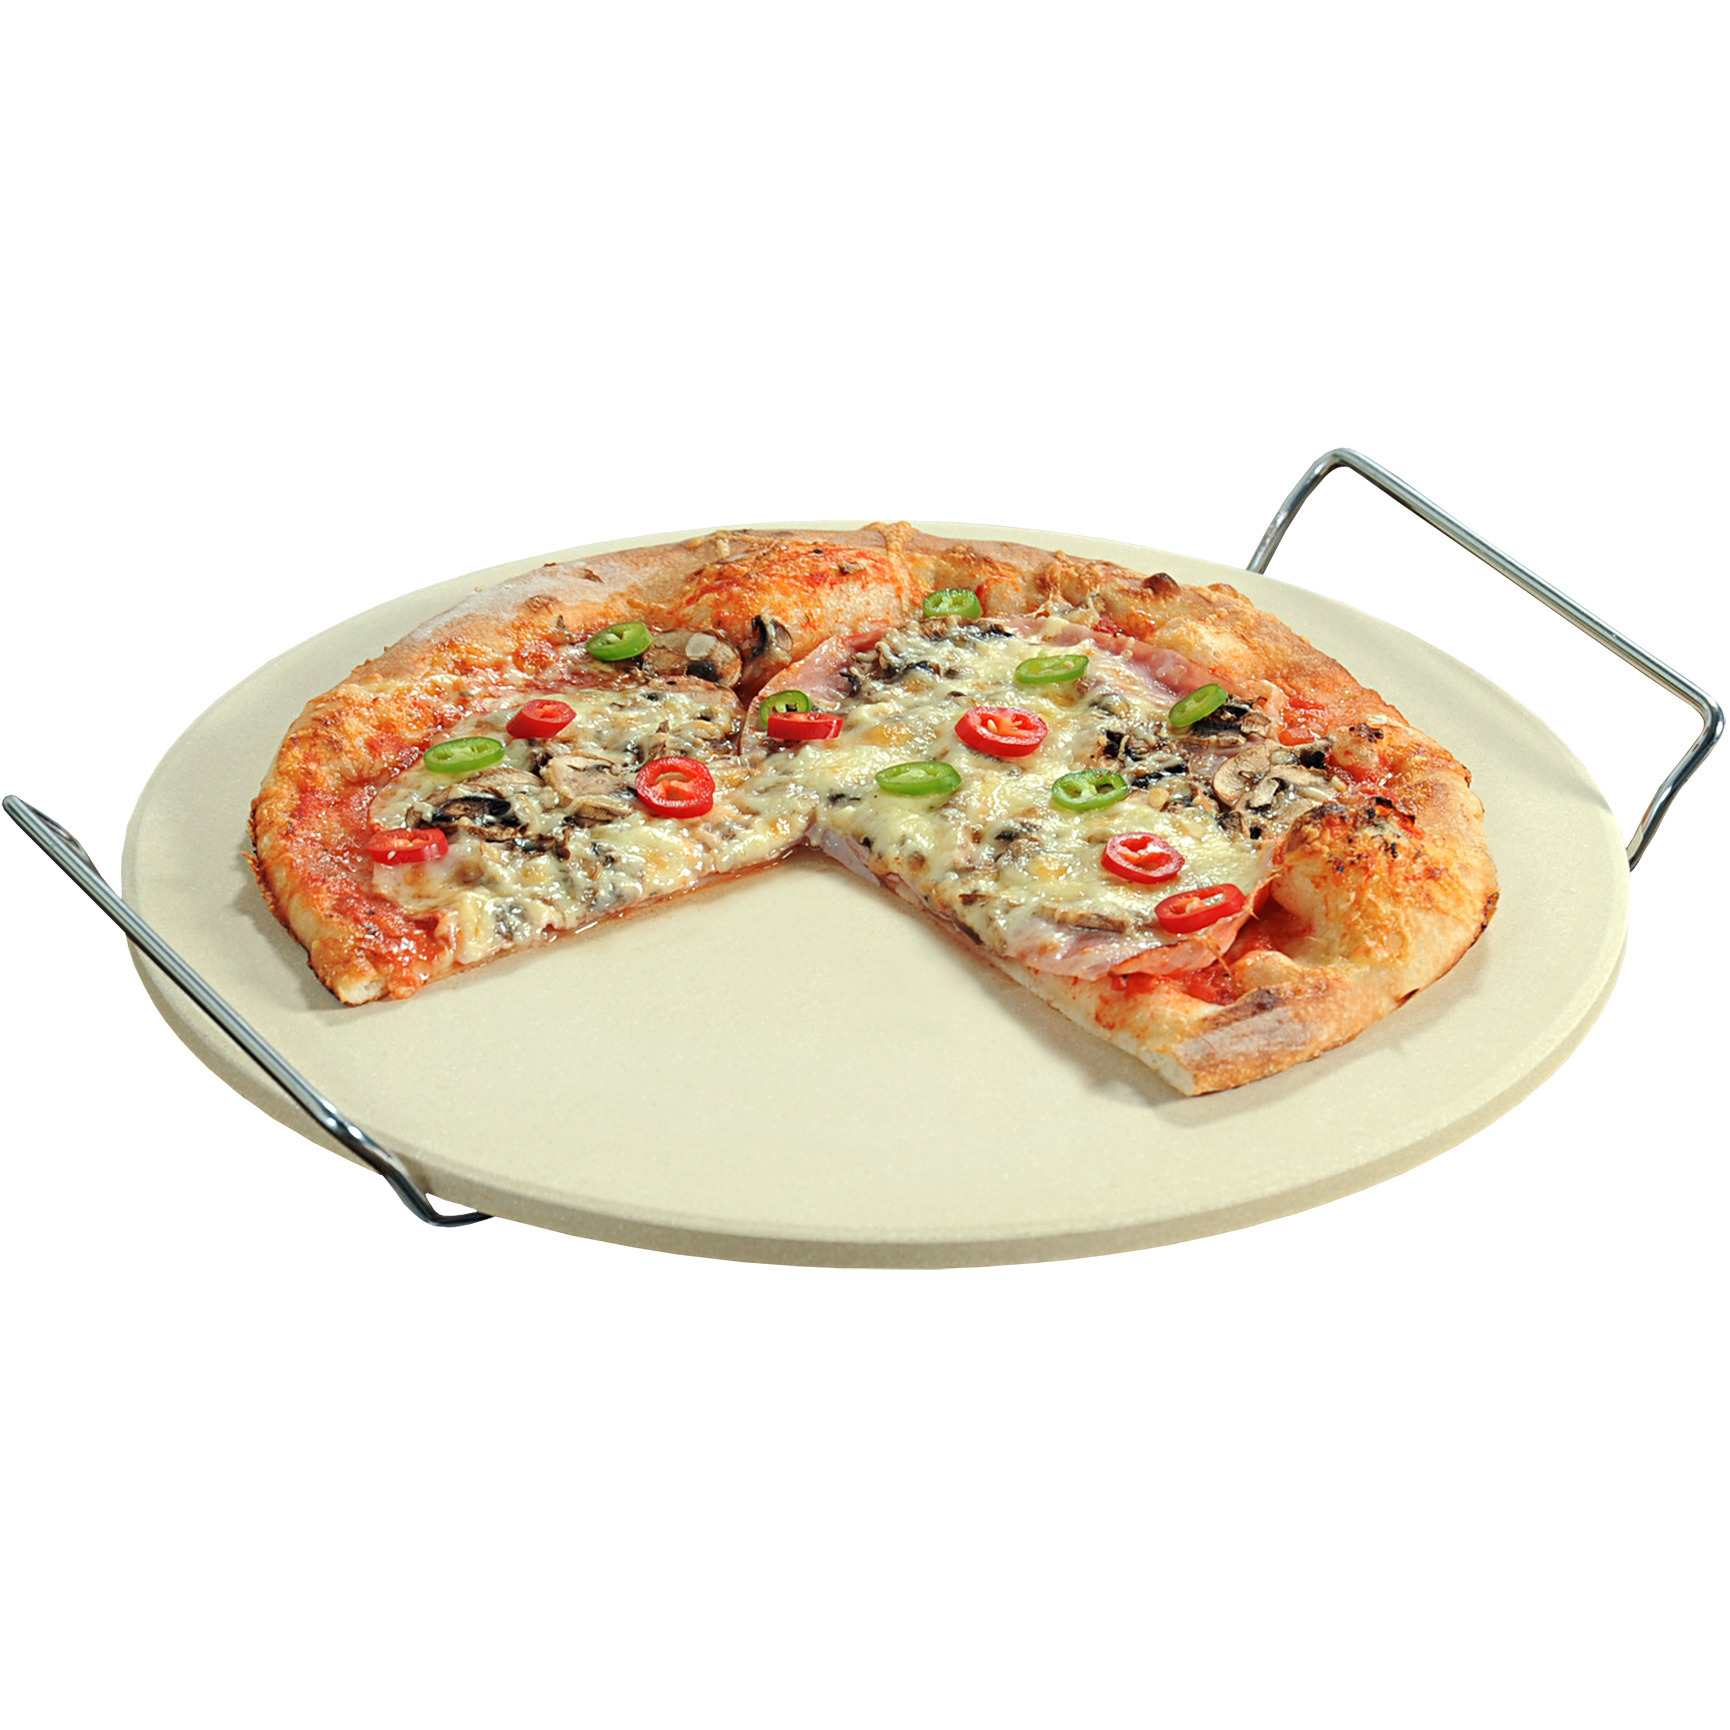 Keramieken pizzasteen rond 33 cm met handvaten